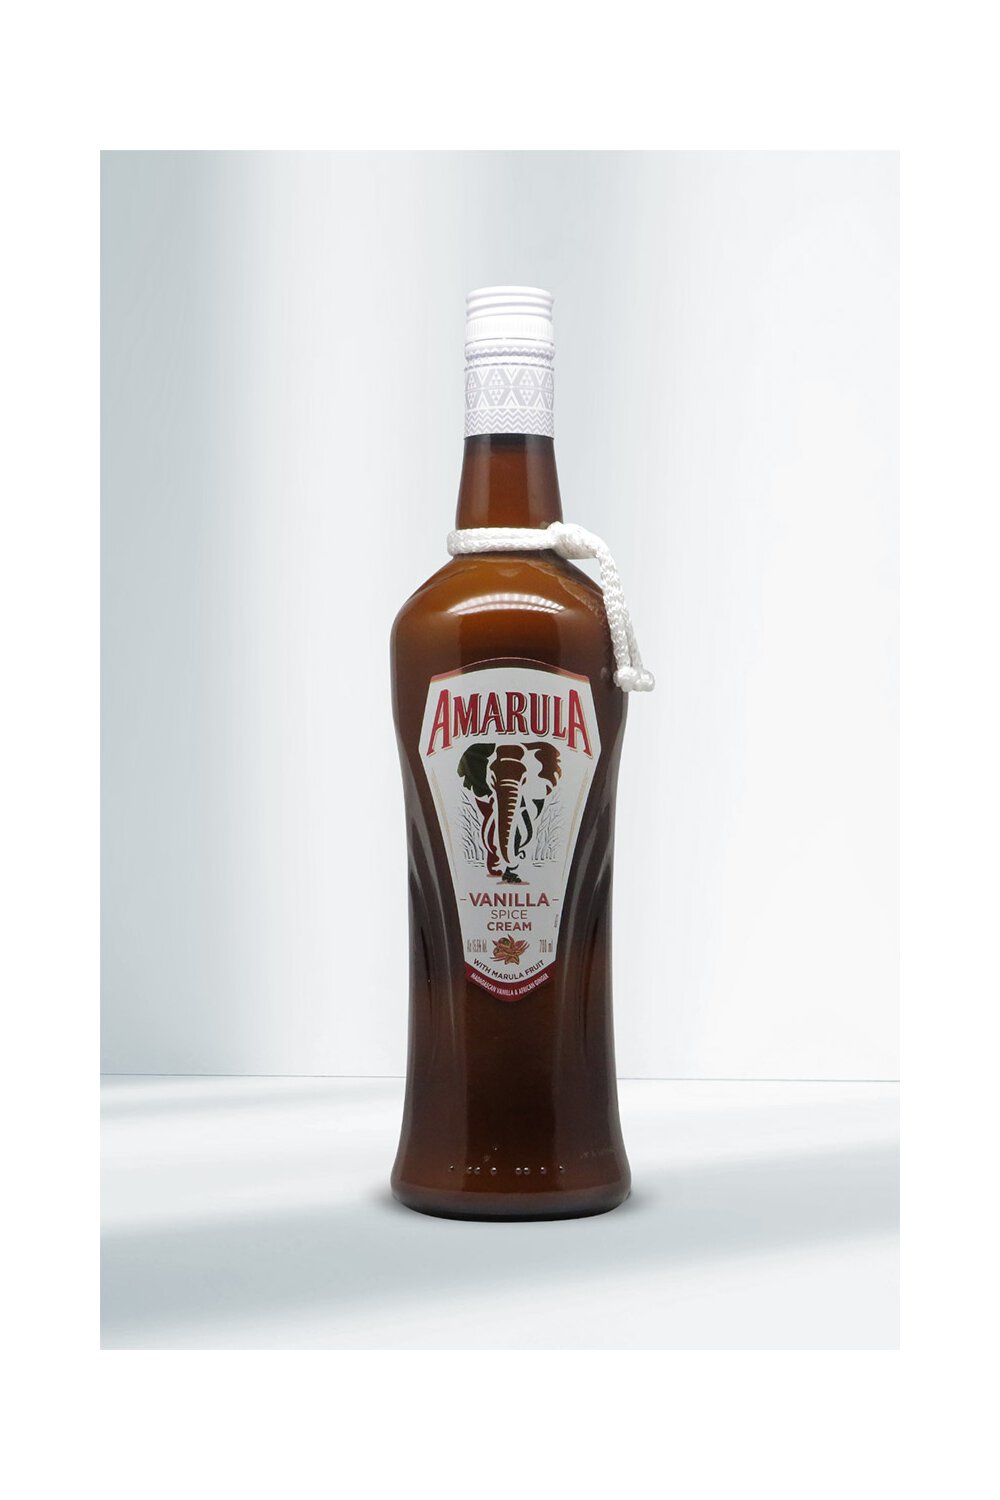 Amarula Vanilla Spice Cream 15,5% 0,7l